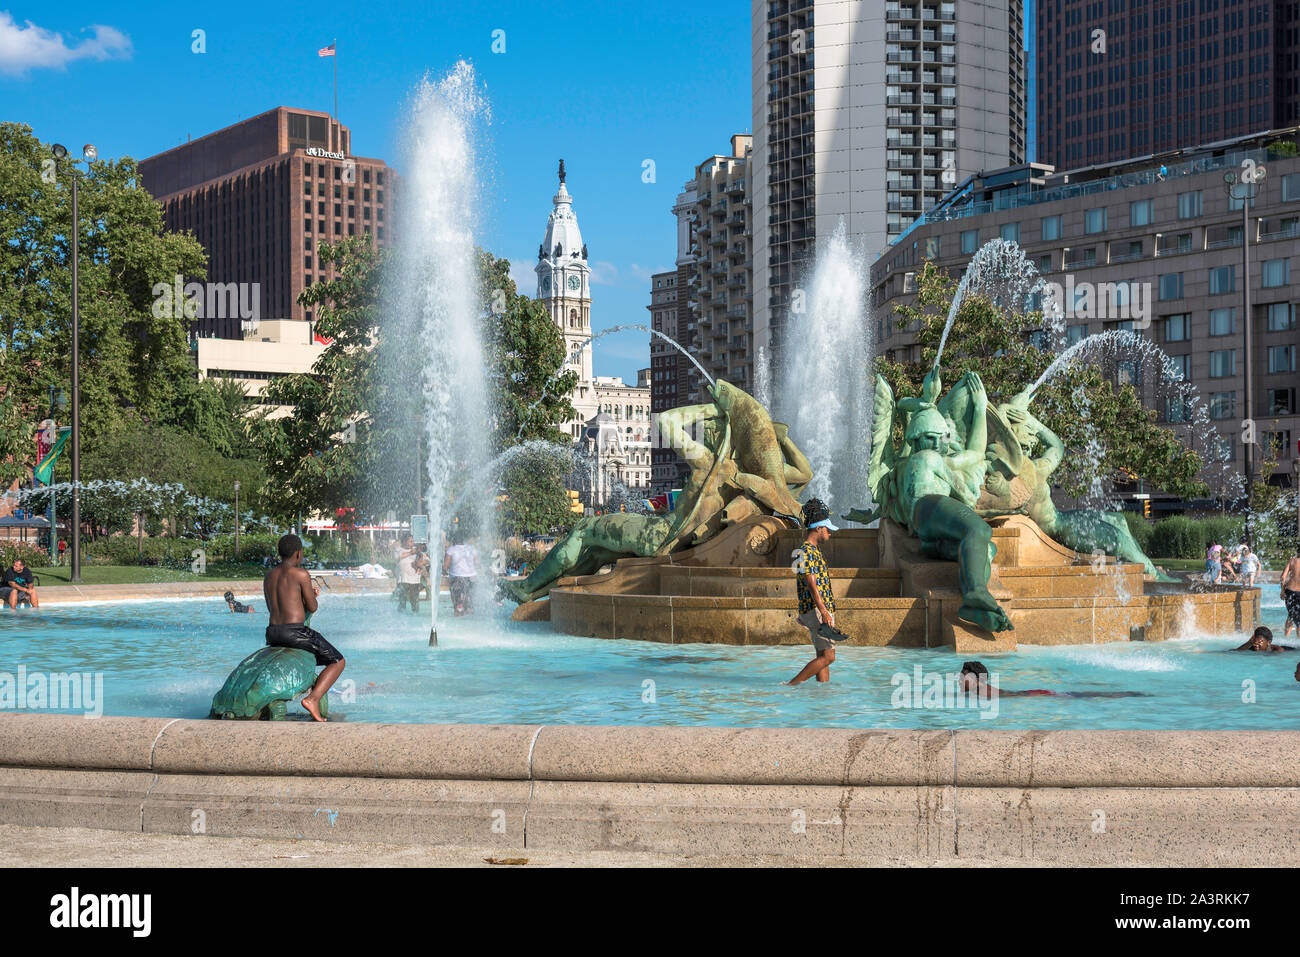 In estate la città USA, vista di giovani giocando la Logan Piazza Fontana in un giorno di estate nel centro di Philadelphia, Pennsylvania, PA, Stati Uniti d'America. Foto Stock